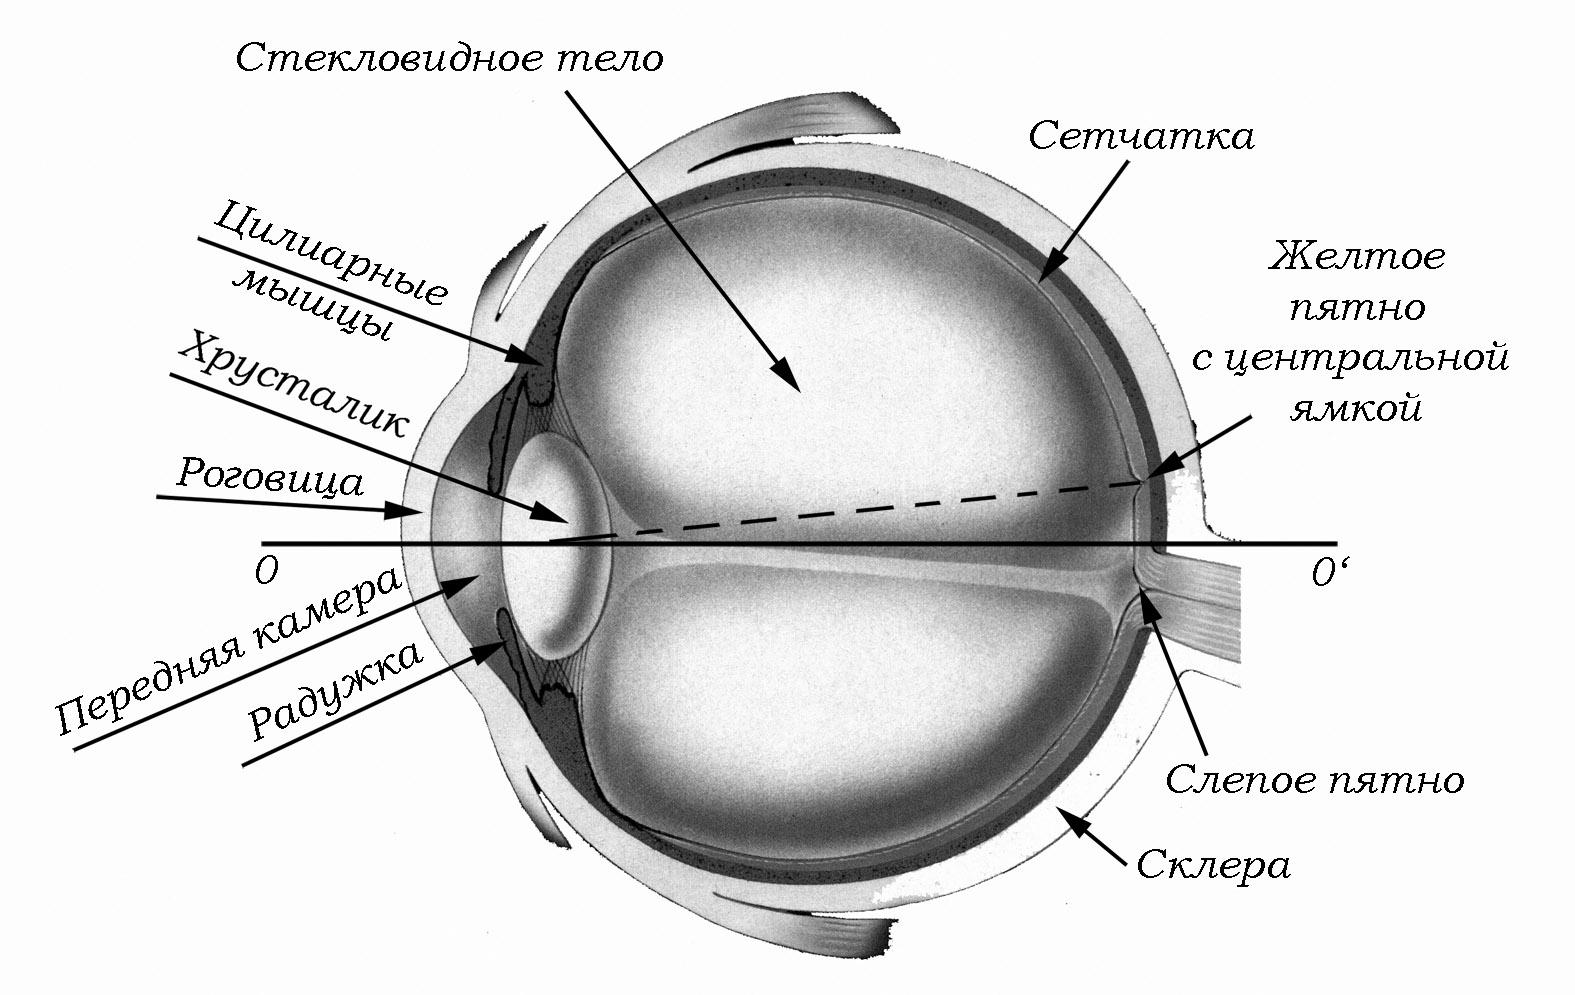 К оптической системе глаза относятся хрусталик